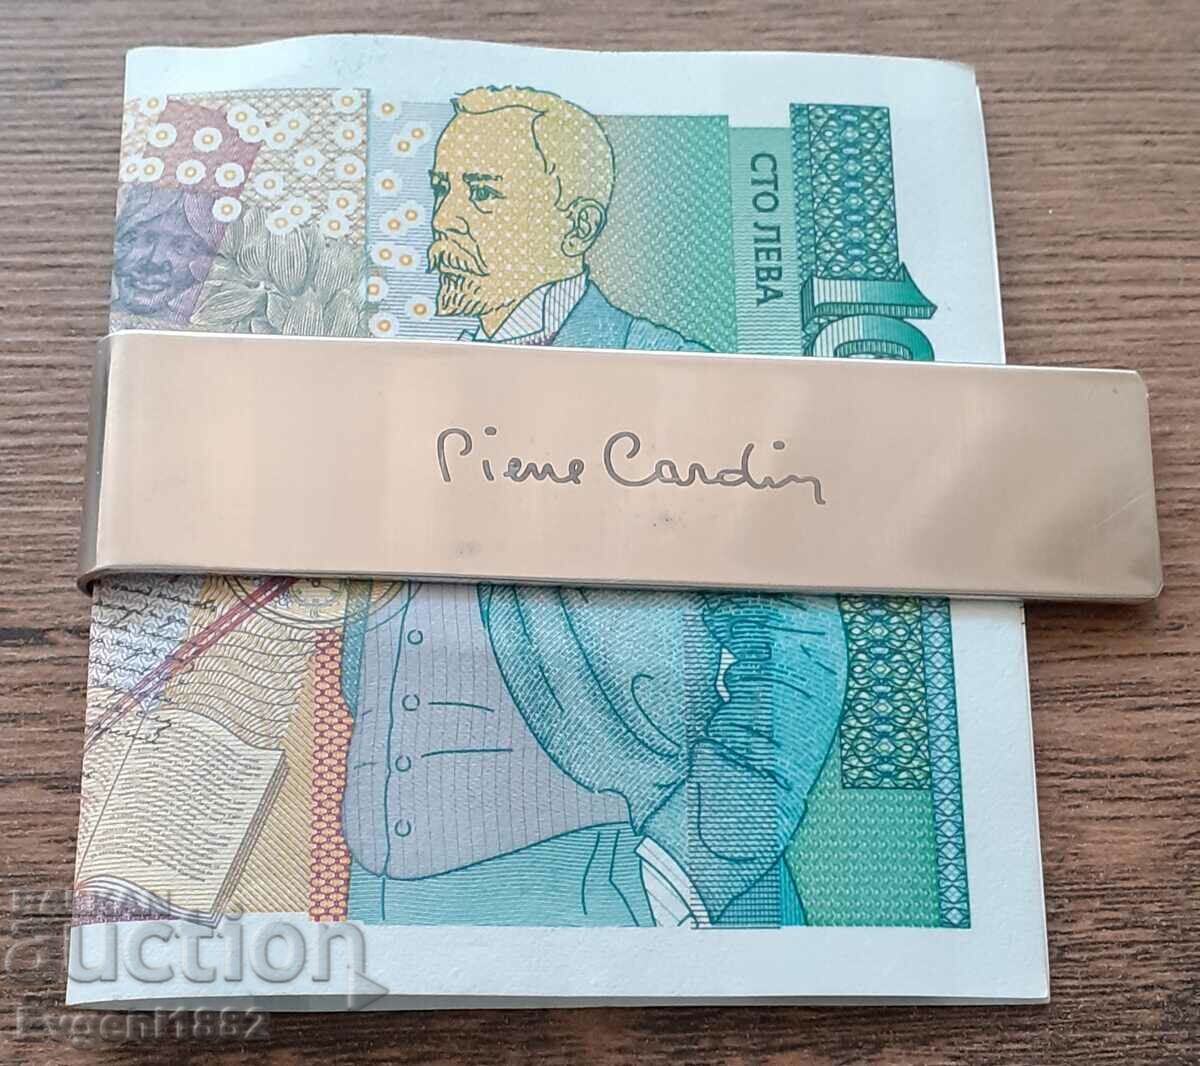 Pierre Cardin - Old Money Clip από ανοξείδωτο ατσάλι